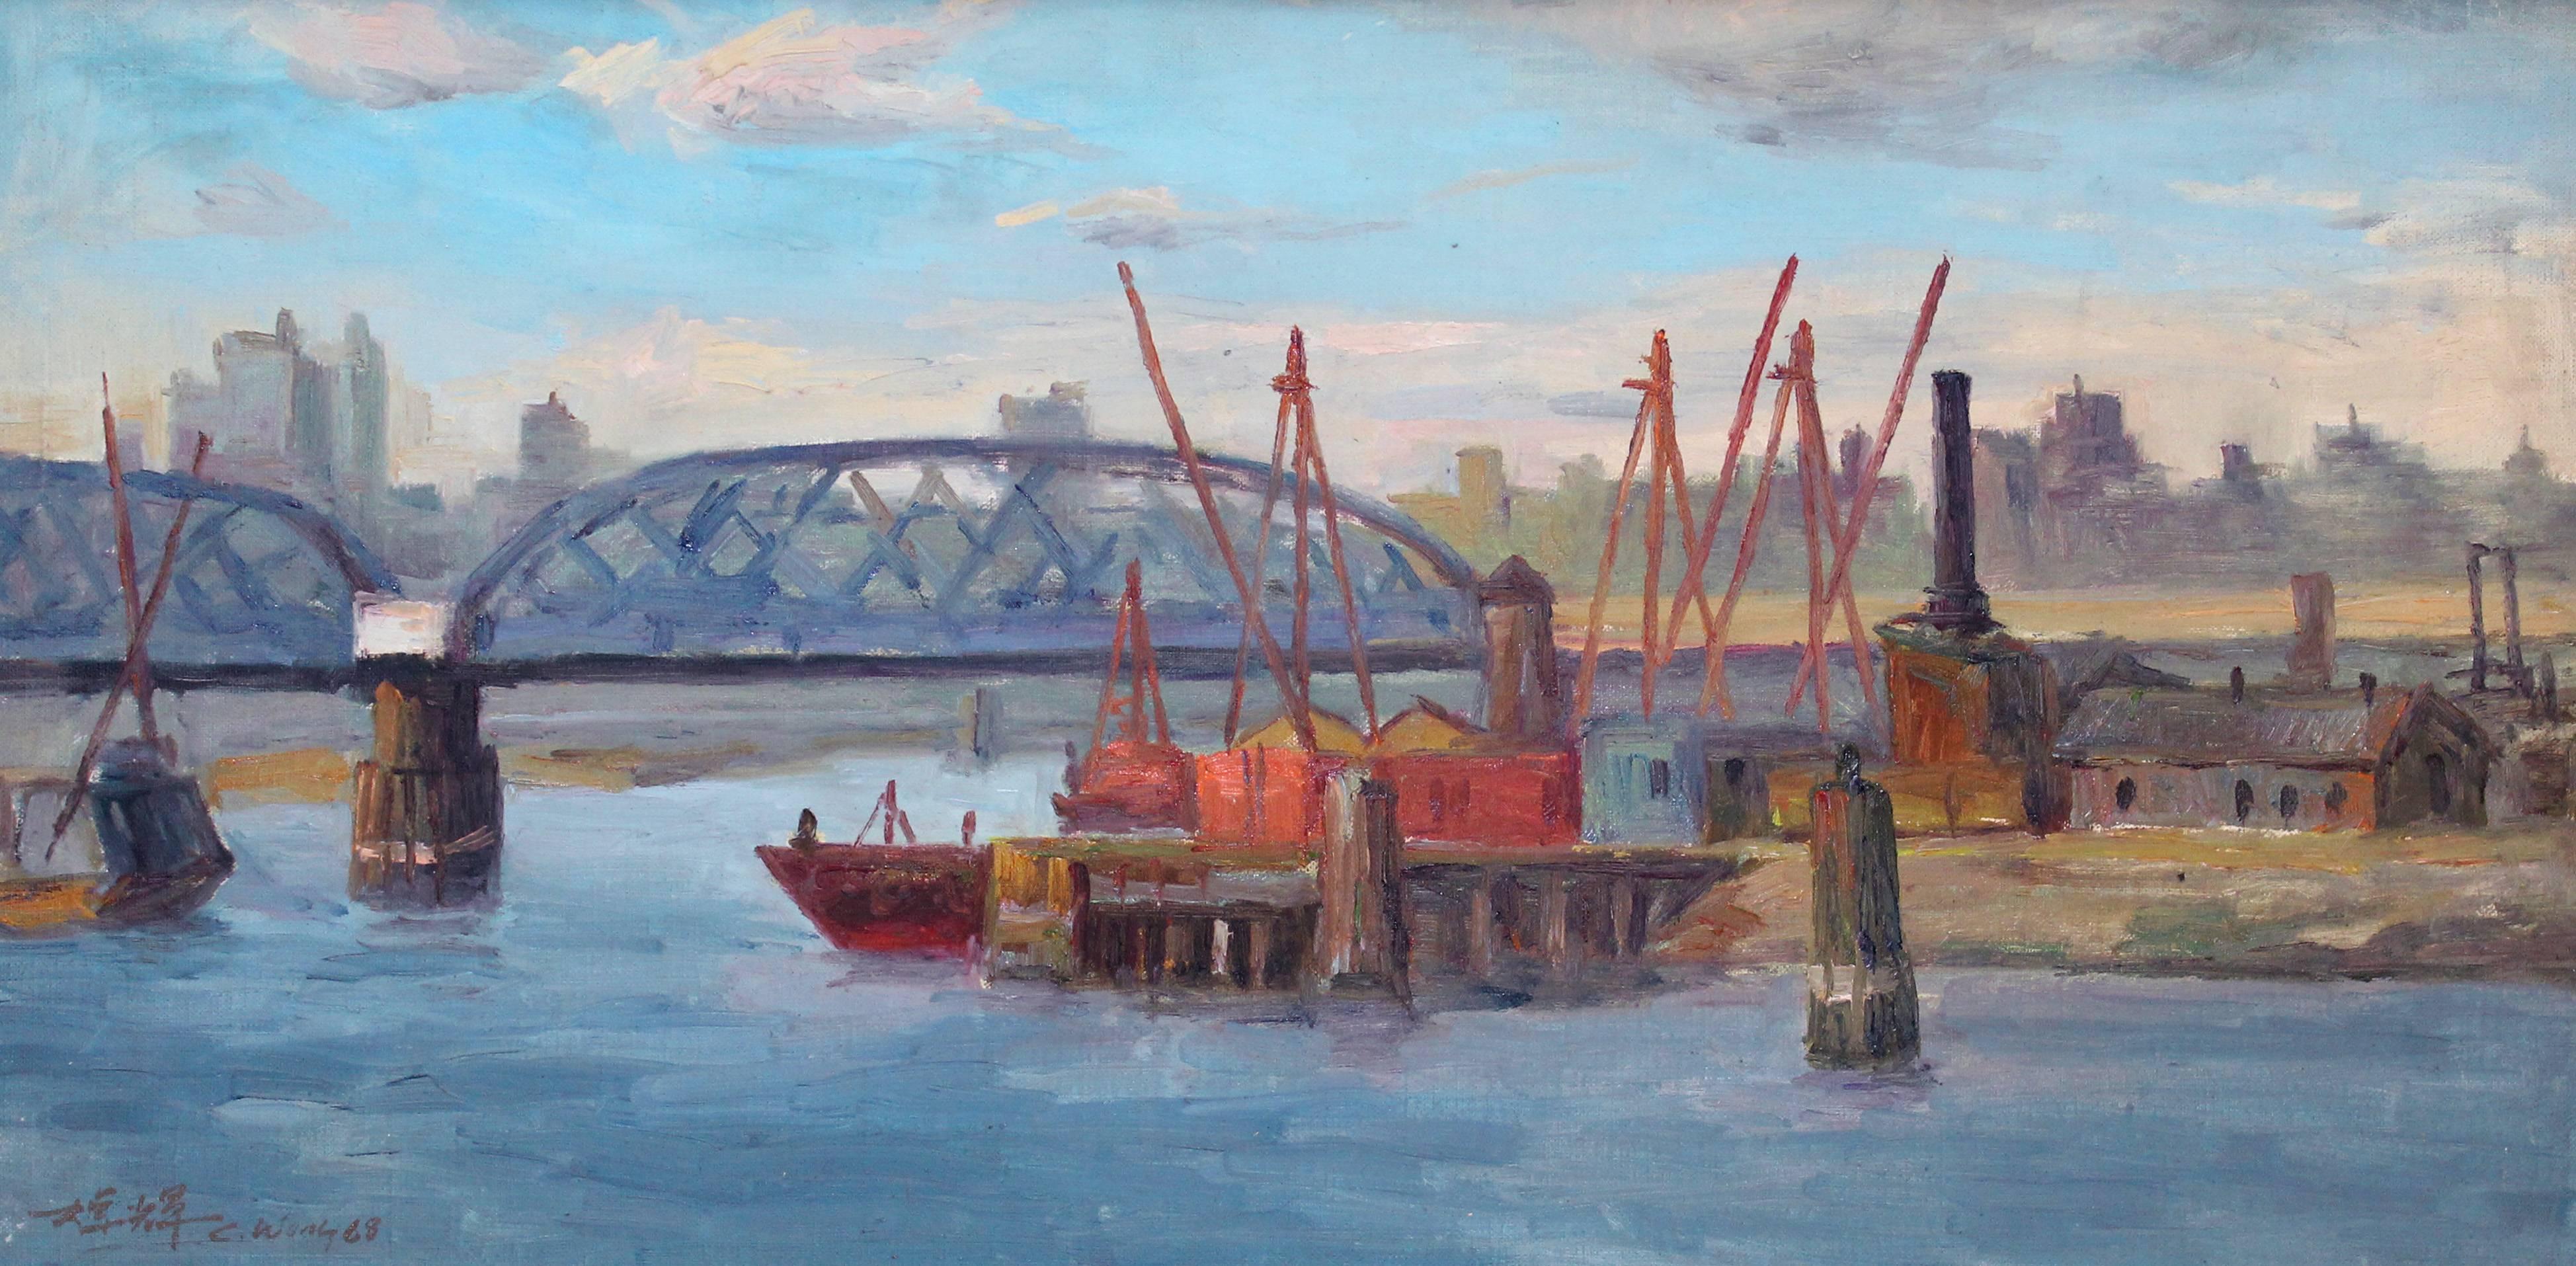 Ansicht der Willis Avenue Bridge – Painting von Chuck Fee Wong